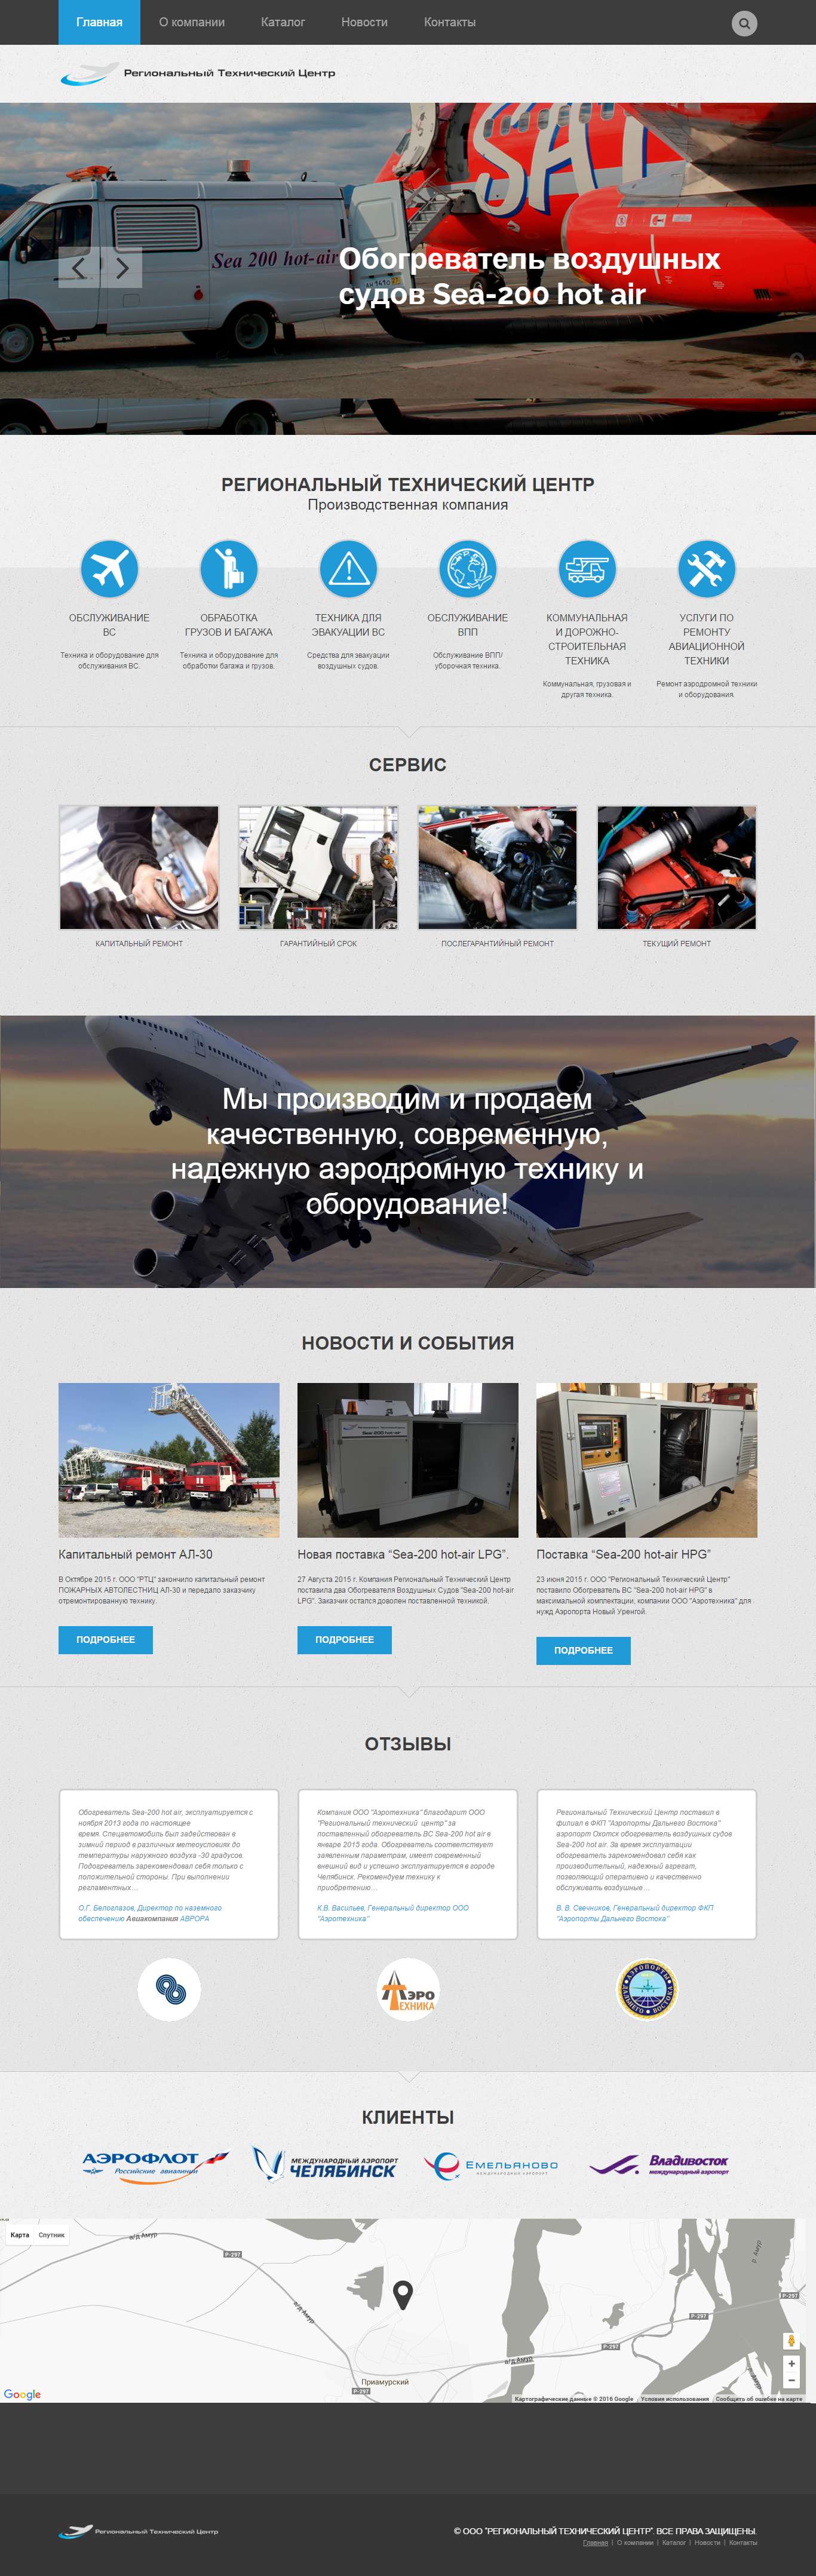 Корпоративный сайт производственной компании "РТЦ" (sea-rtc.ru)